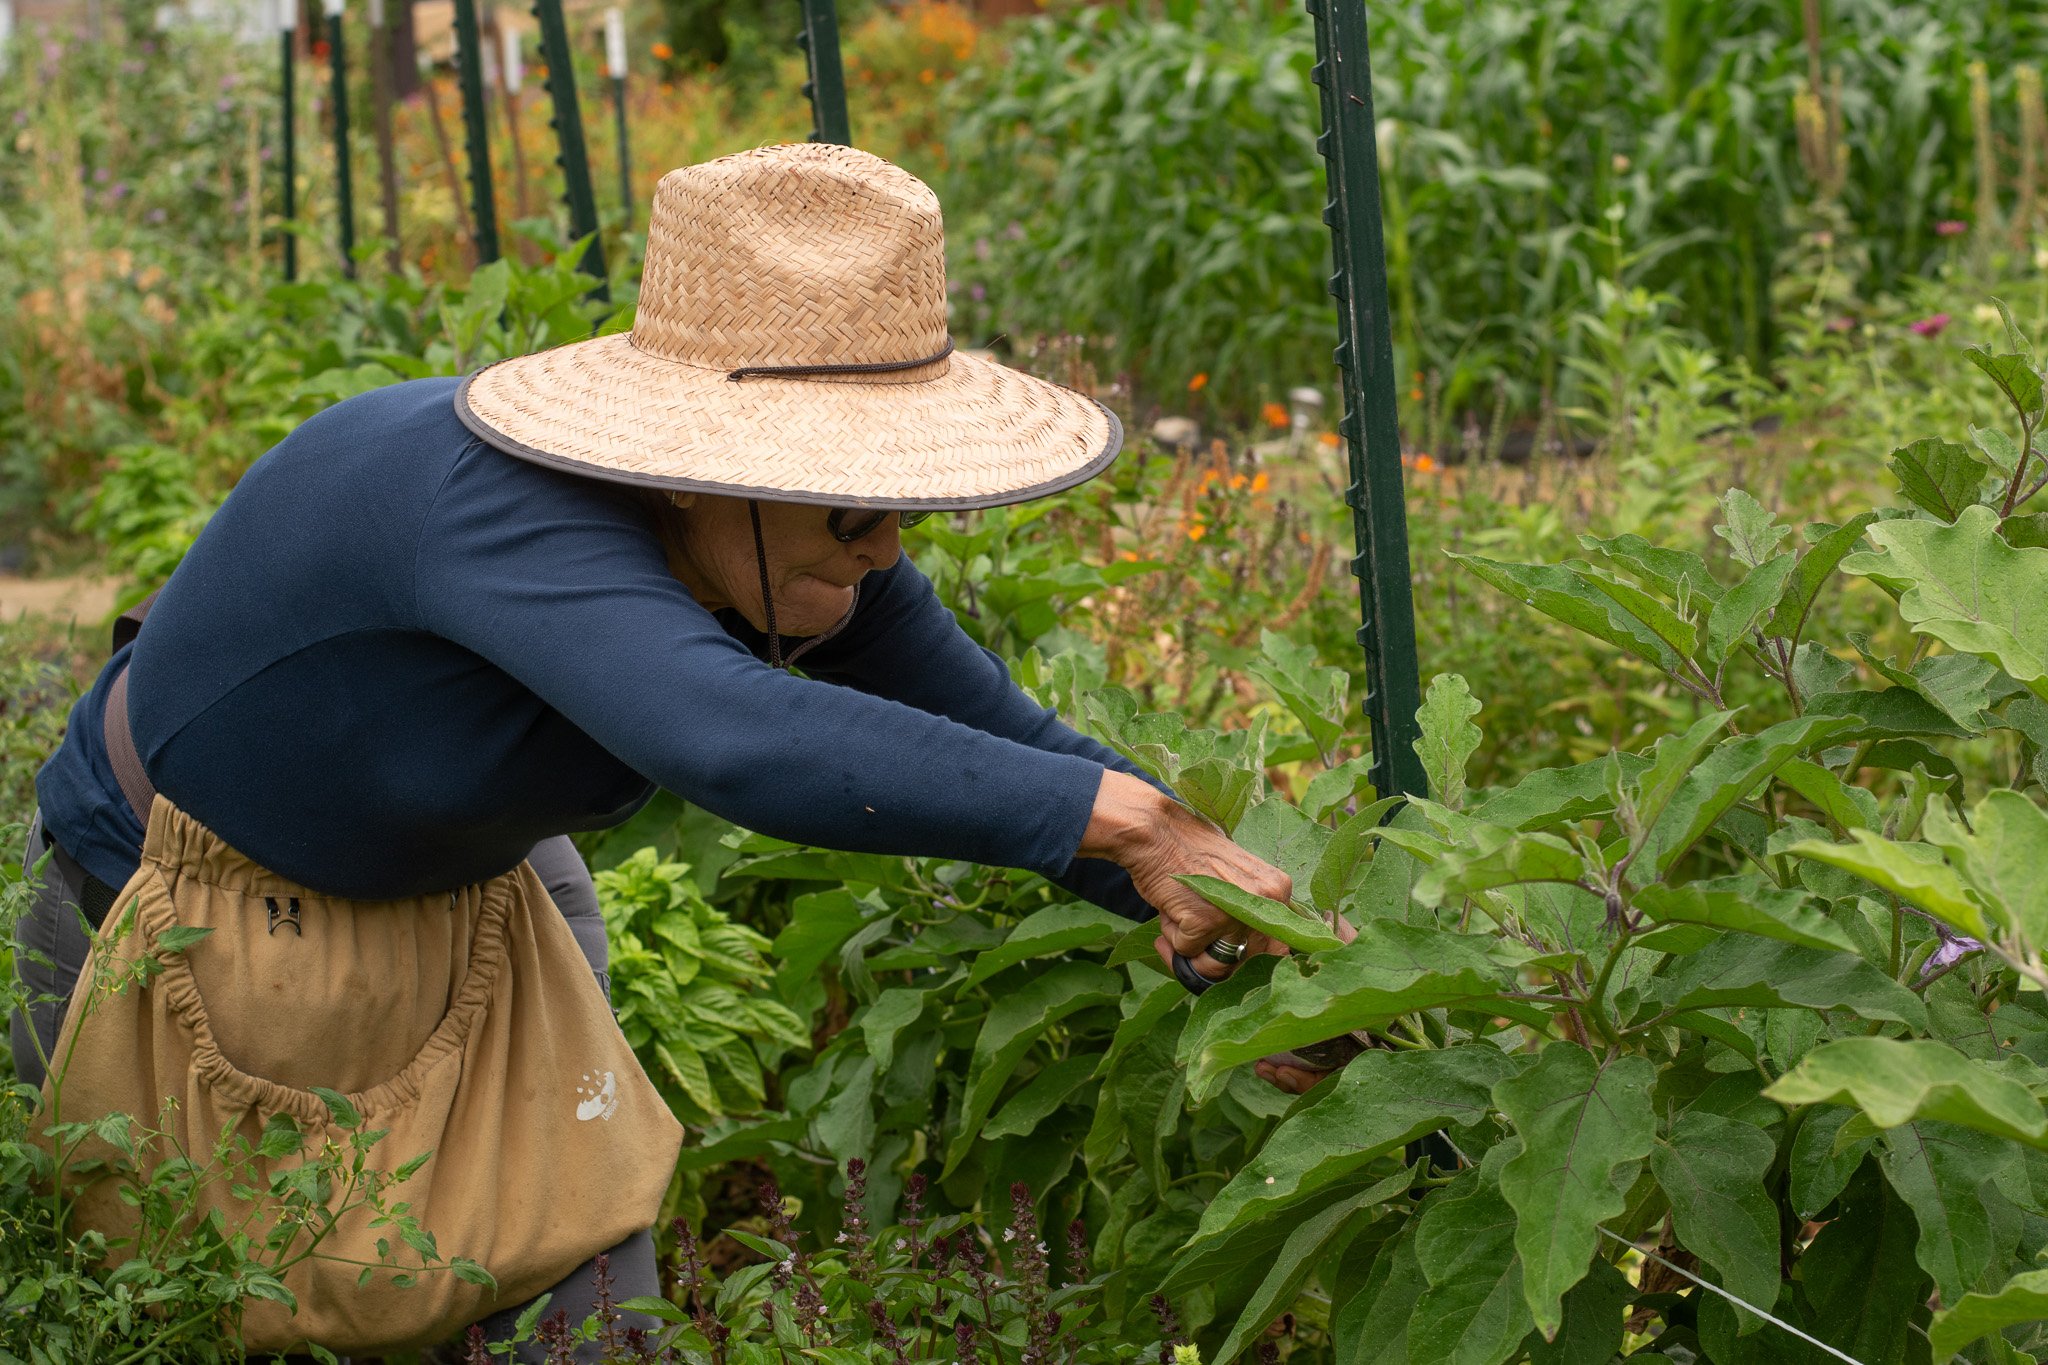   Long-time volunteer Elvira Rodallegas snips an eggplant from the vine Sept. 13.  